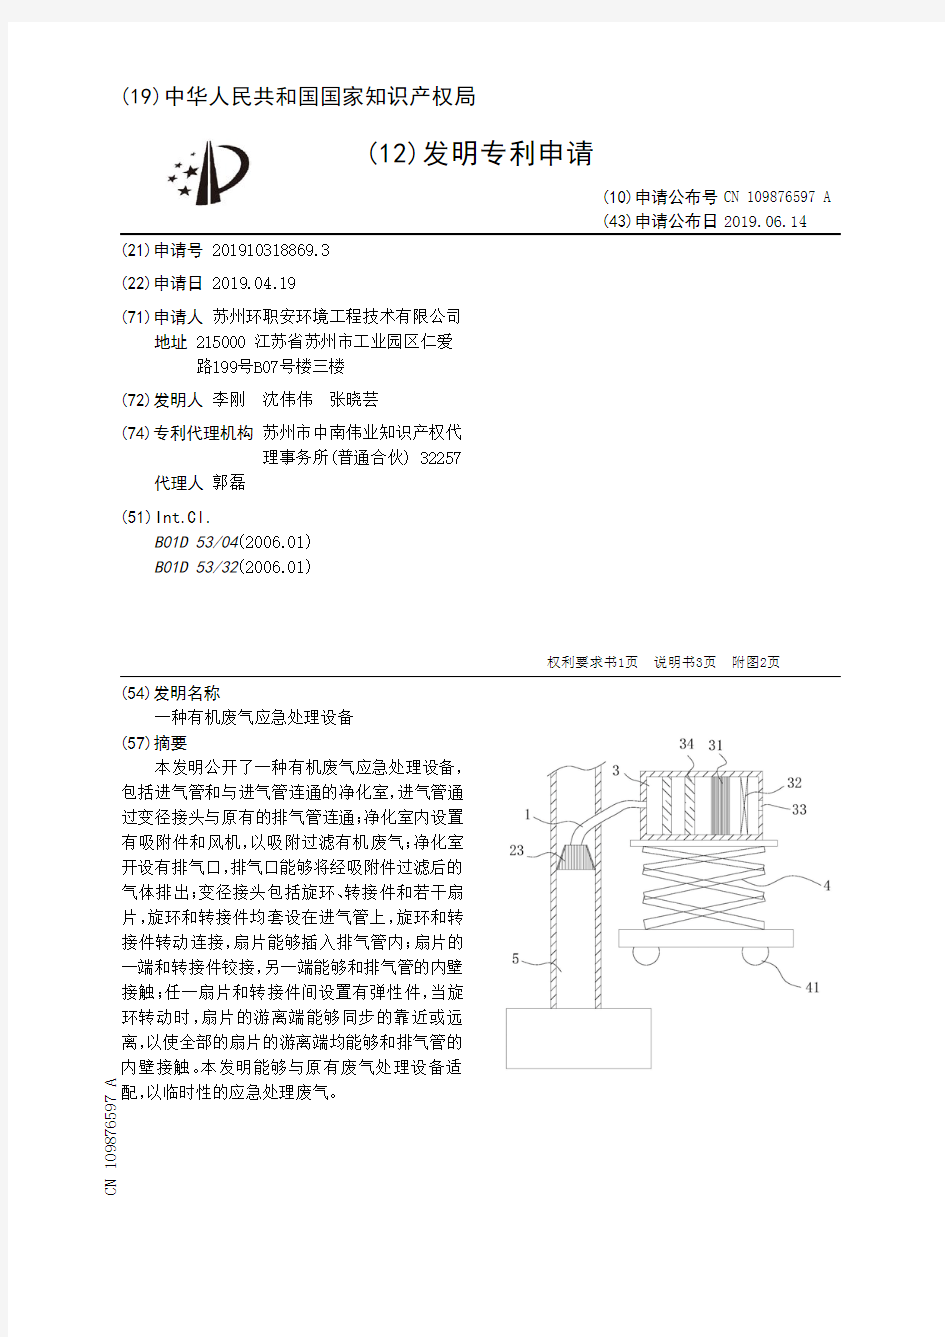 【CN109876597A】一种有机废气应急处理设备【专利】